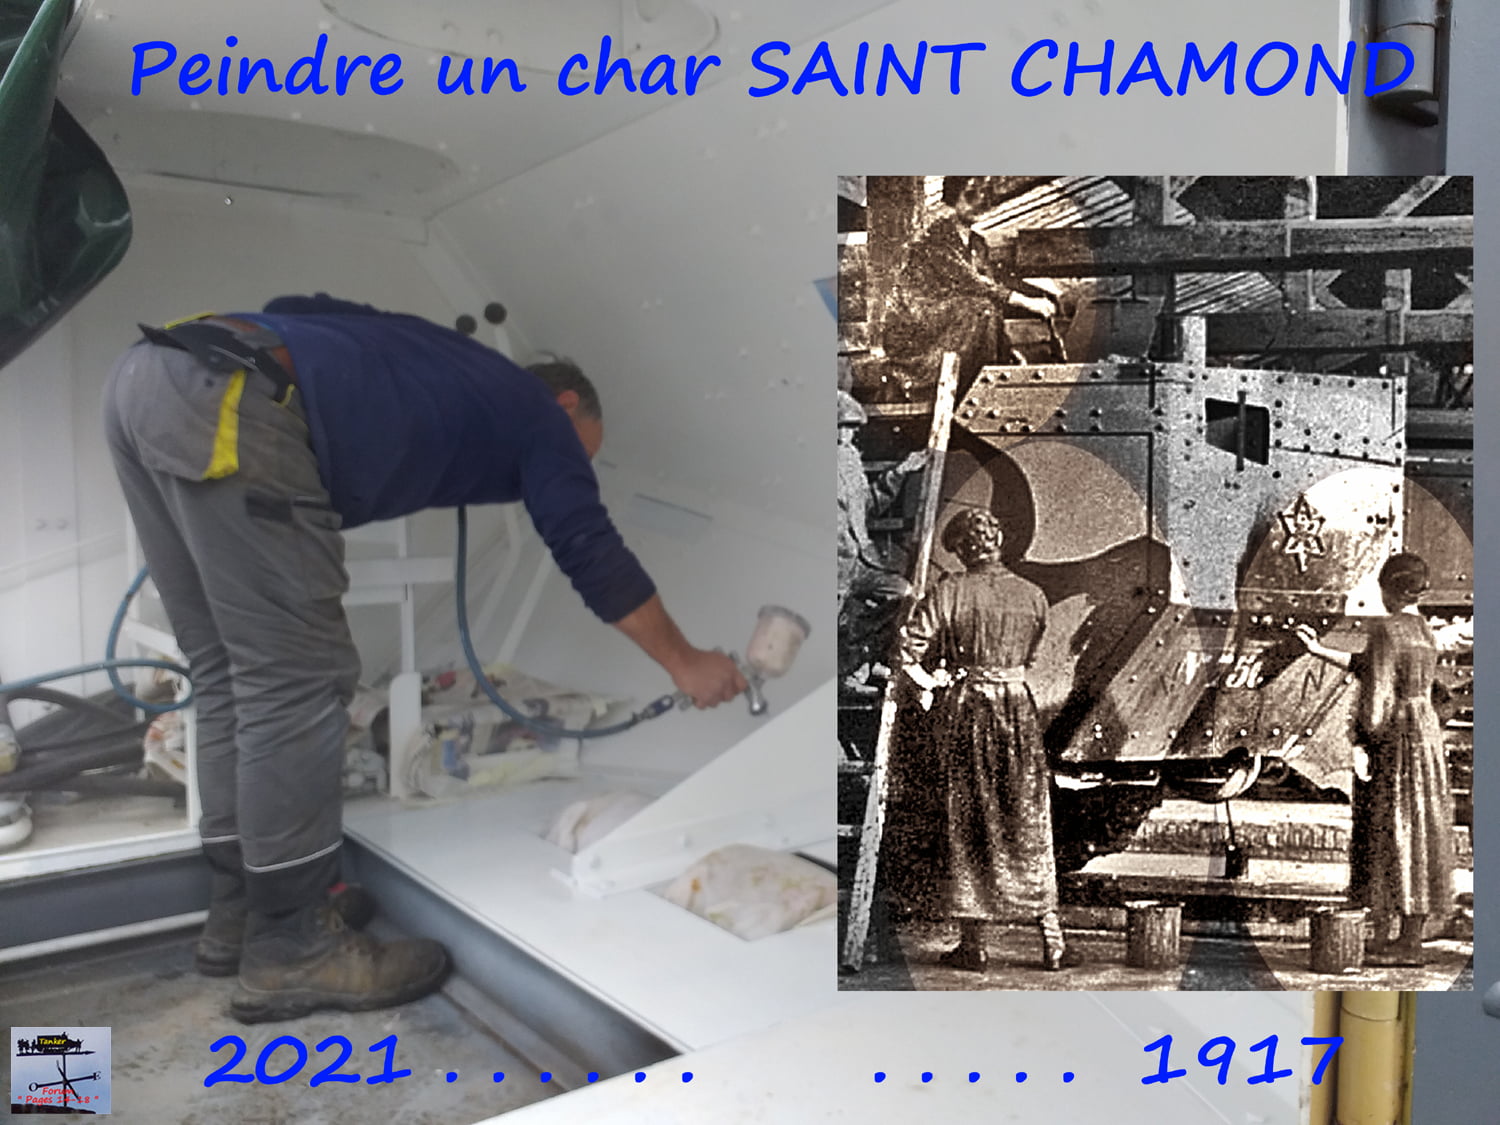 St Chamond  M1 de MdP (601a2)-min.jpg